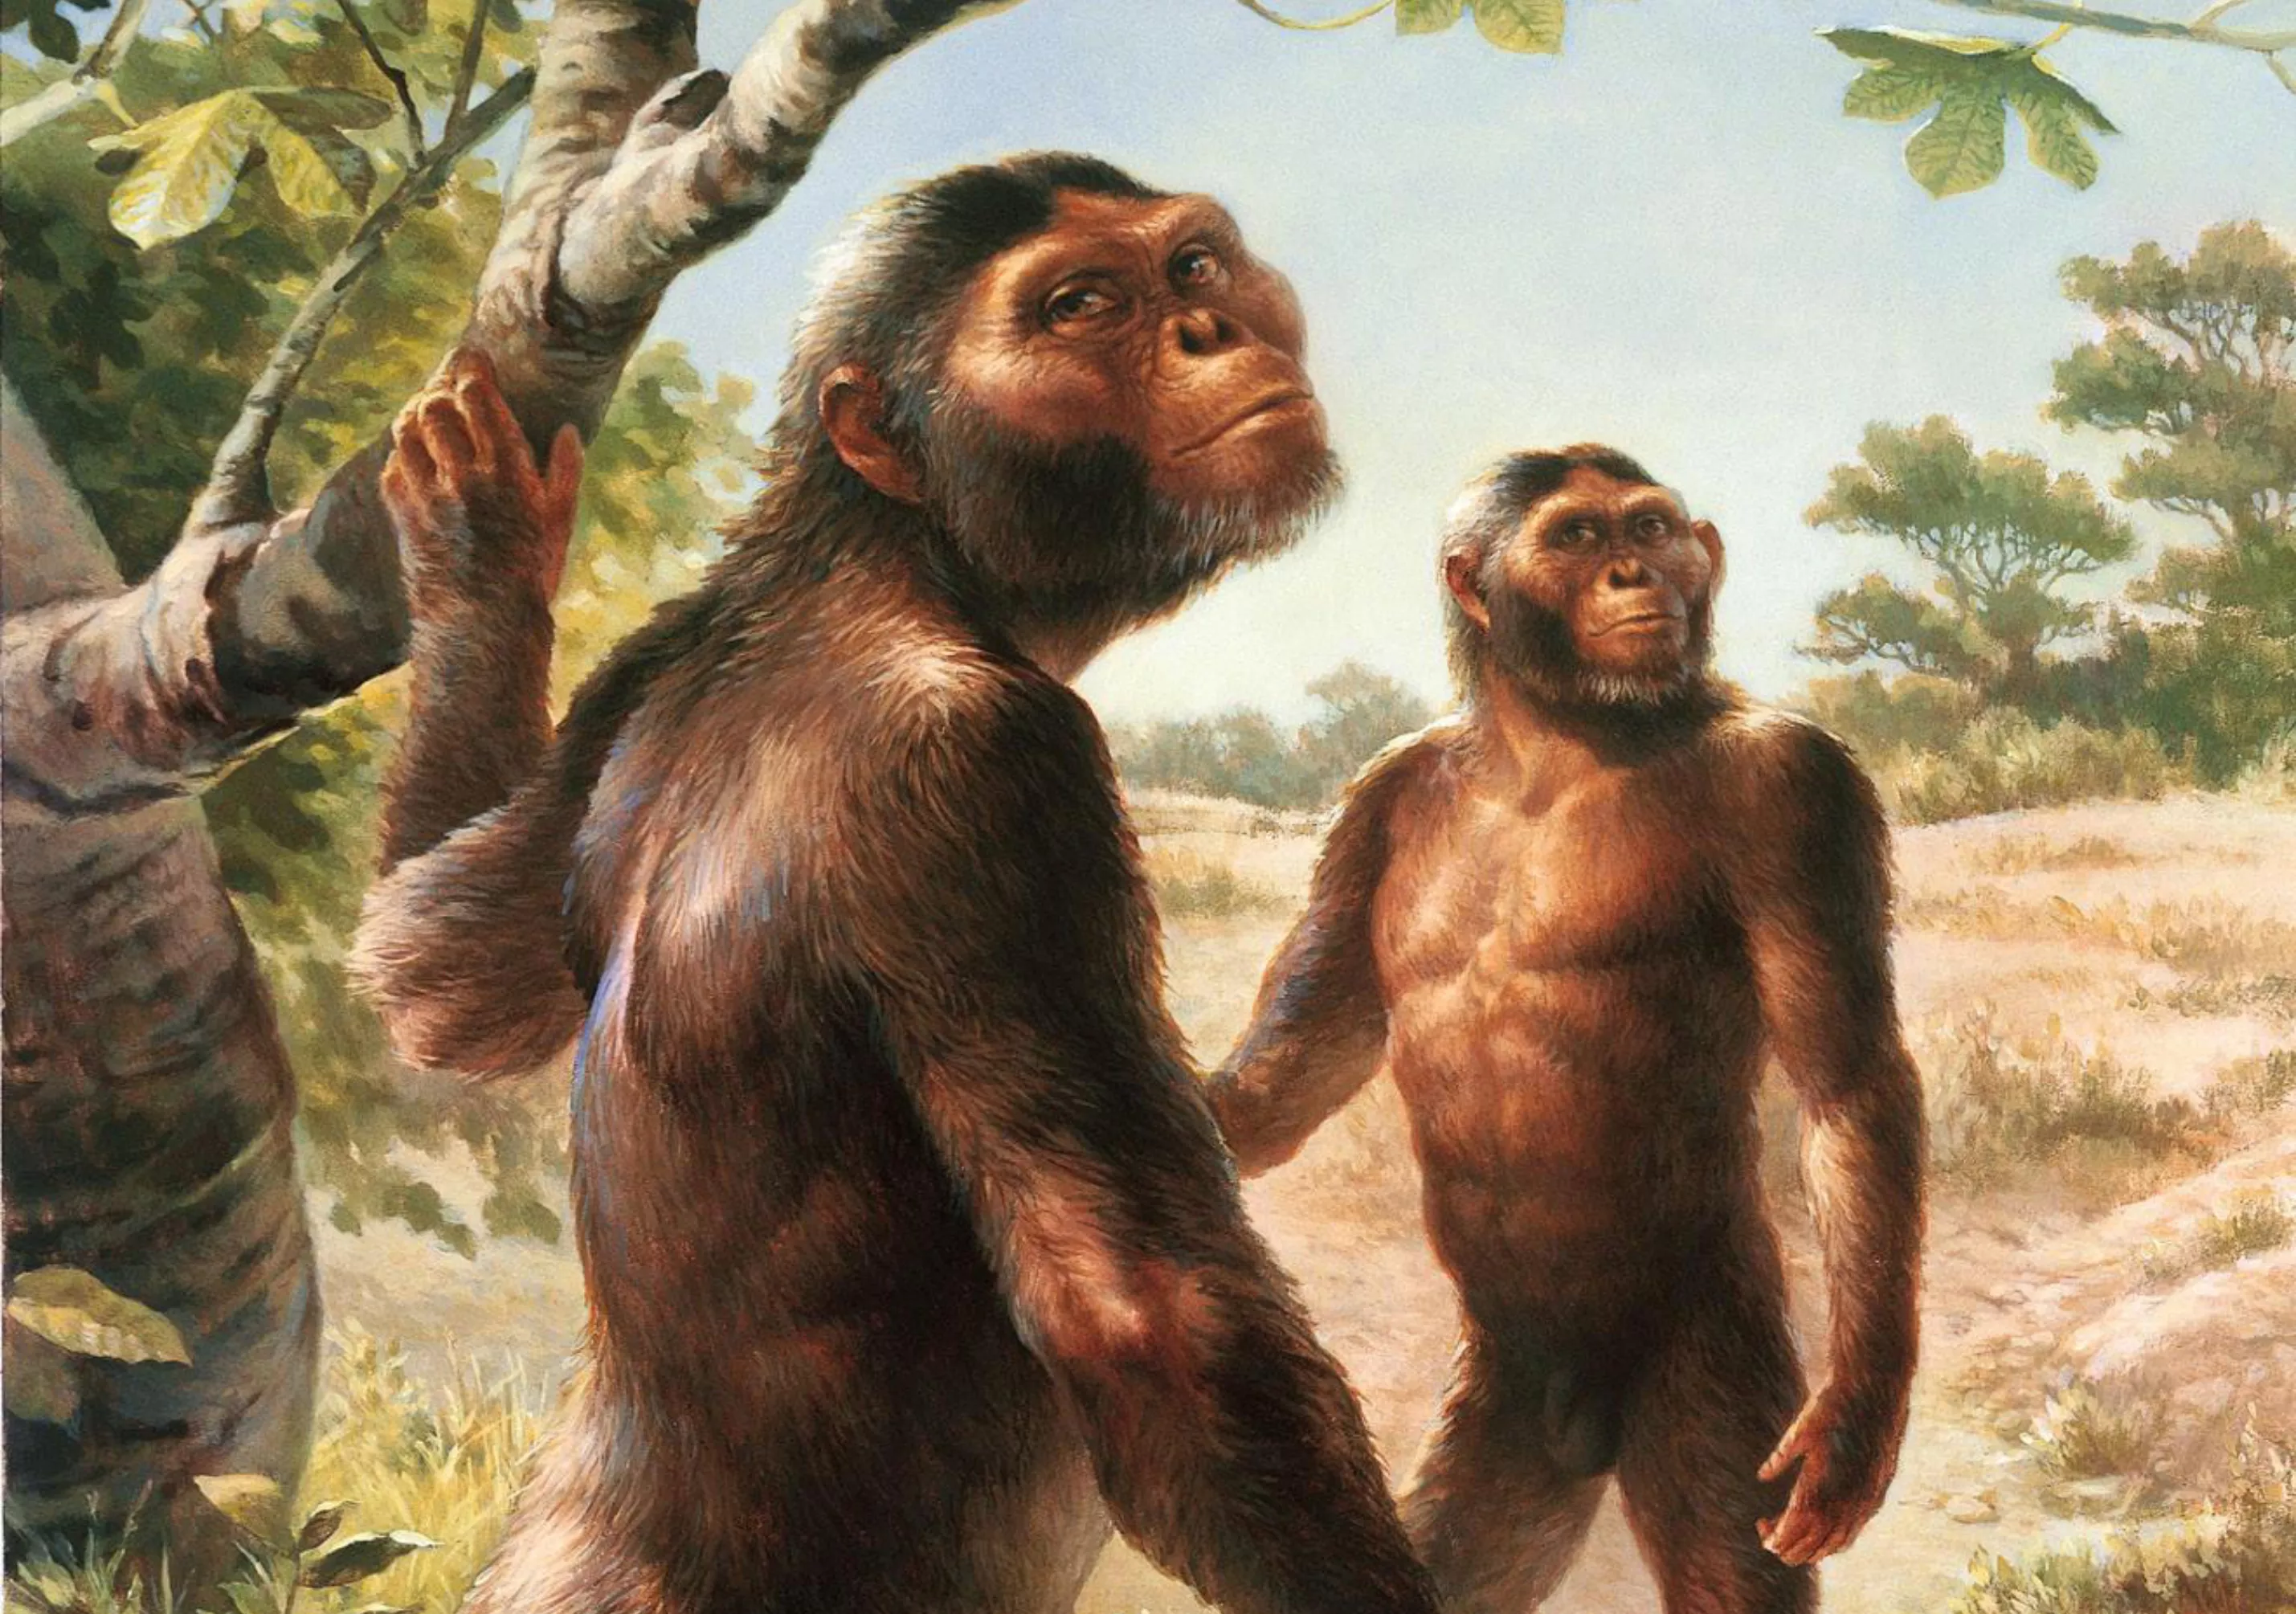 De la Lucy, una dona adulta de l’espècie 'Australopithecus afarensis', se’n va trobar el 40% de l’esquelet. Com que era l’homínid més antic trobat fins almoment, va ser coneguda com 'l’àvia de la humanitat'